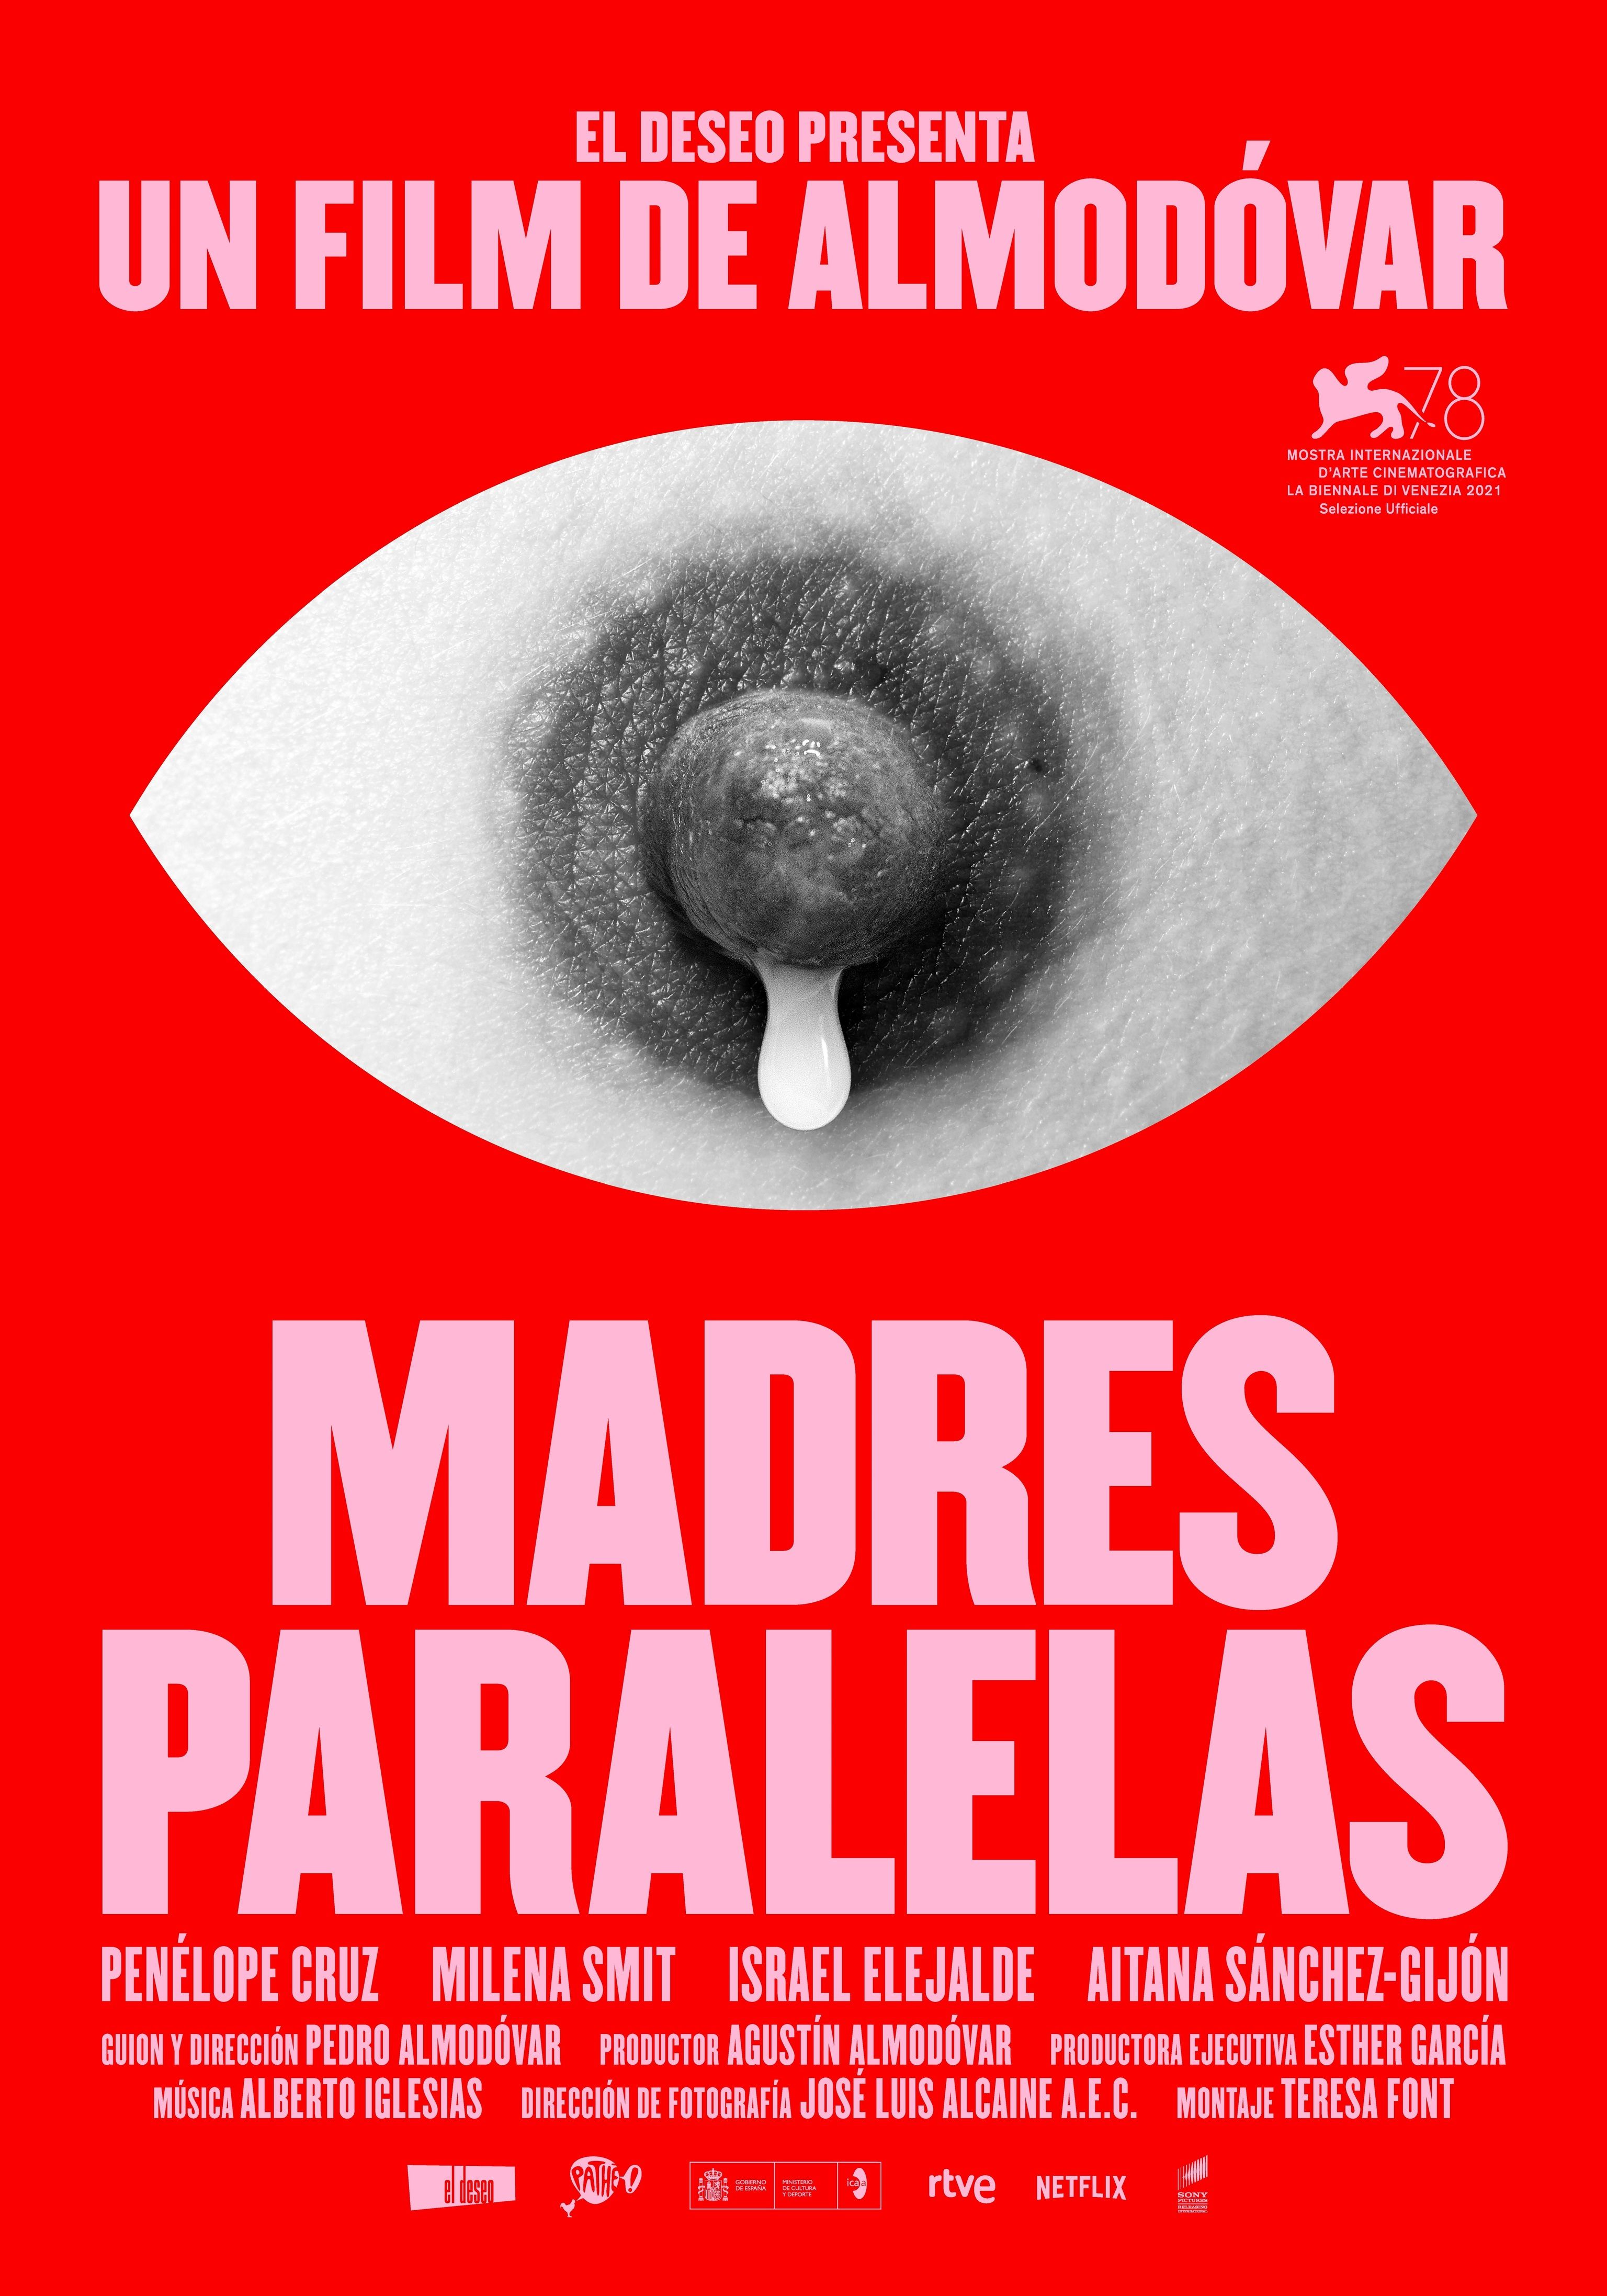 Madres paralelas: todo sobre la película de Pedro Almodóvar